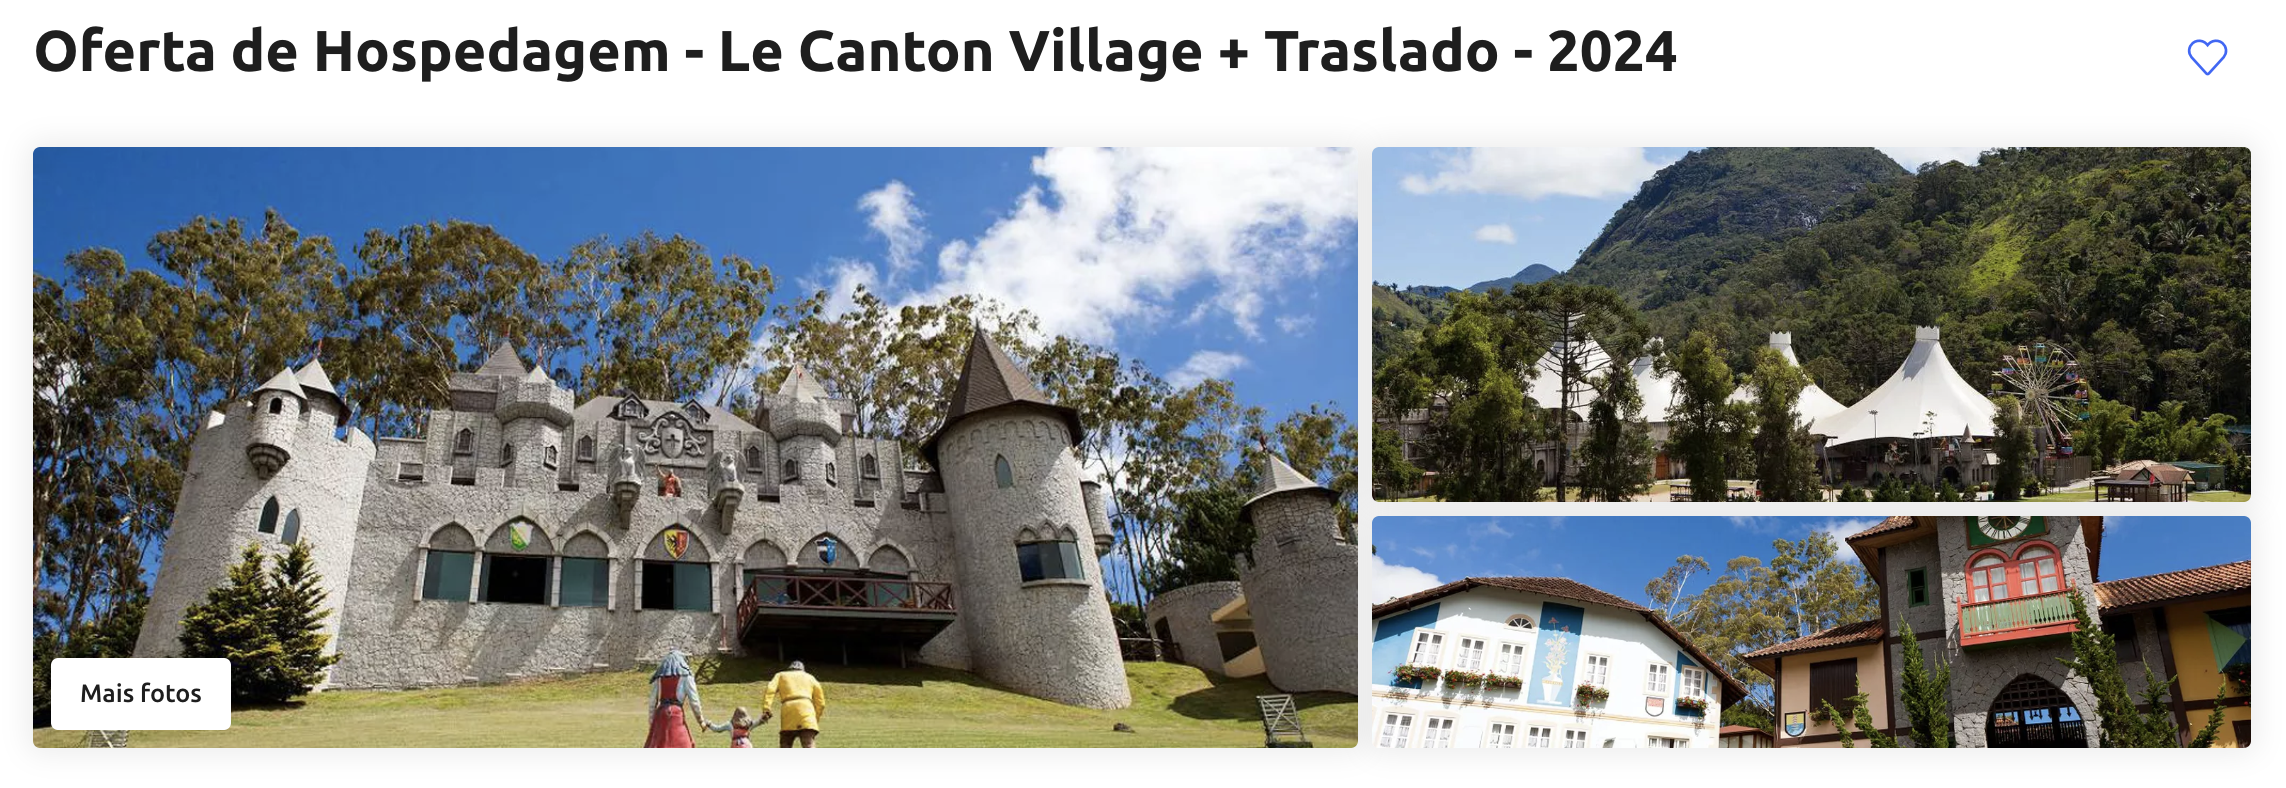 Oferta de Hospedagem - Le Canton Village + Traslado - 2024 